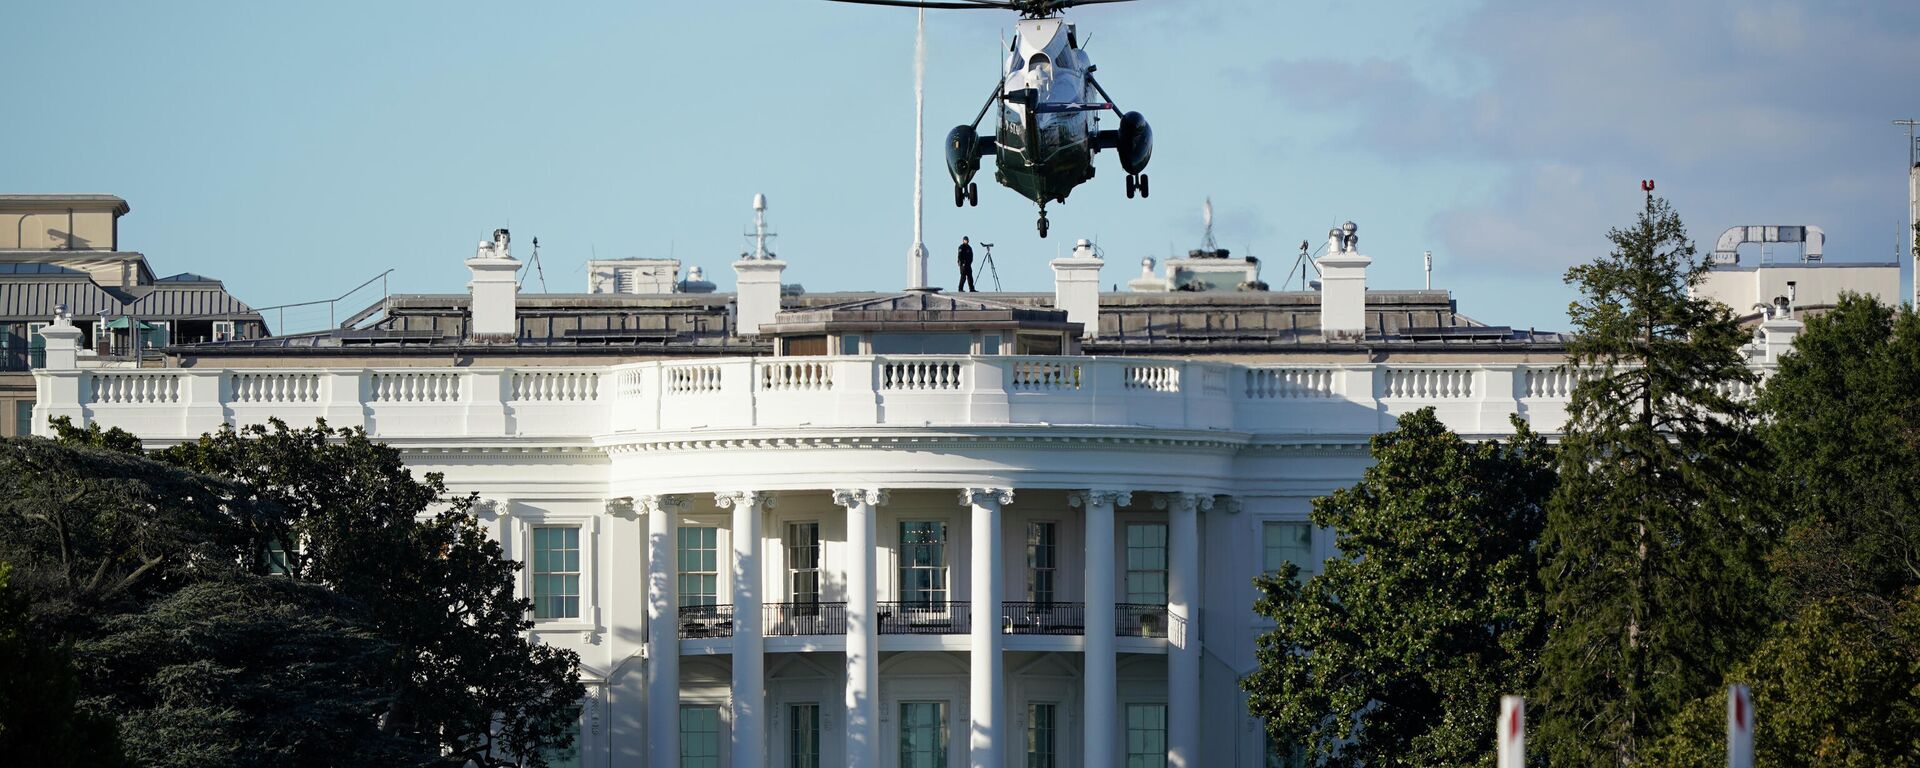 Un helicóptero aterriza sobre el césped de la Casa Blanca - Sputnik Mundo, 1920, 06.03.2021